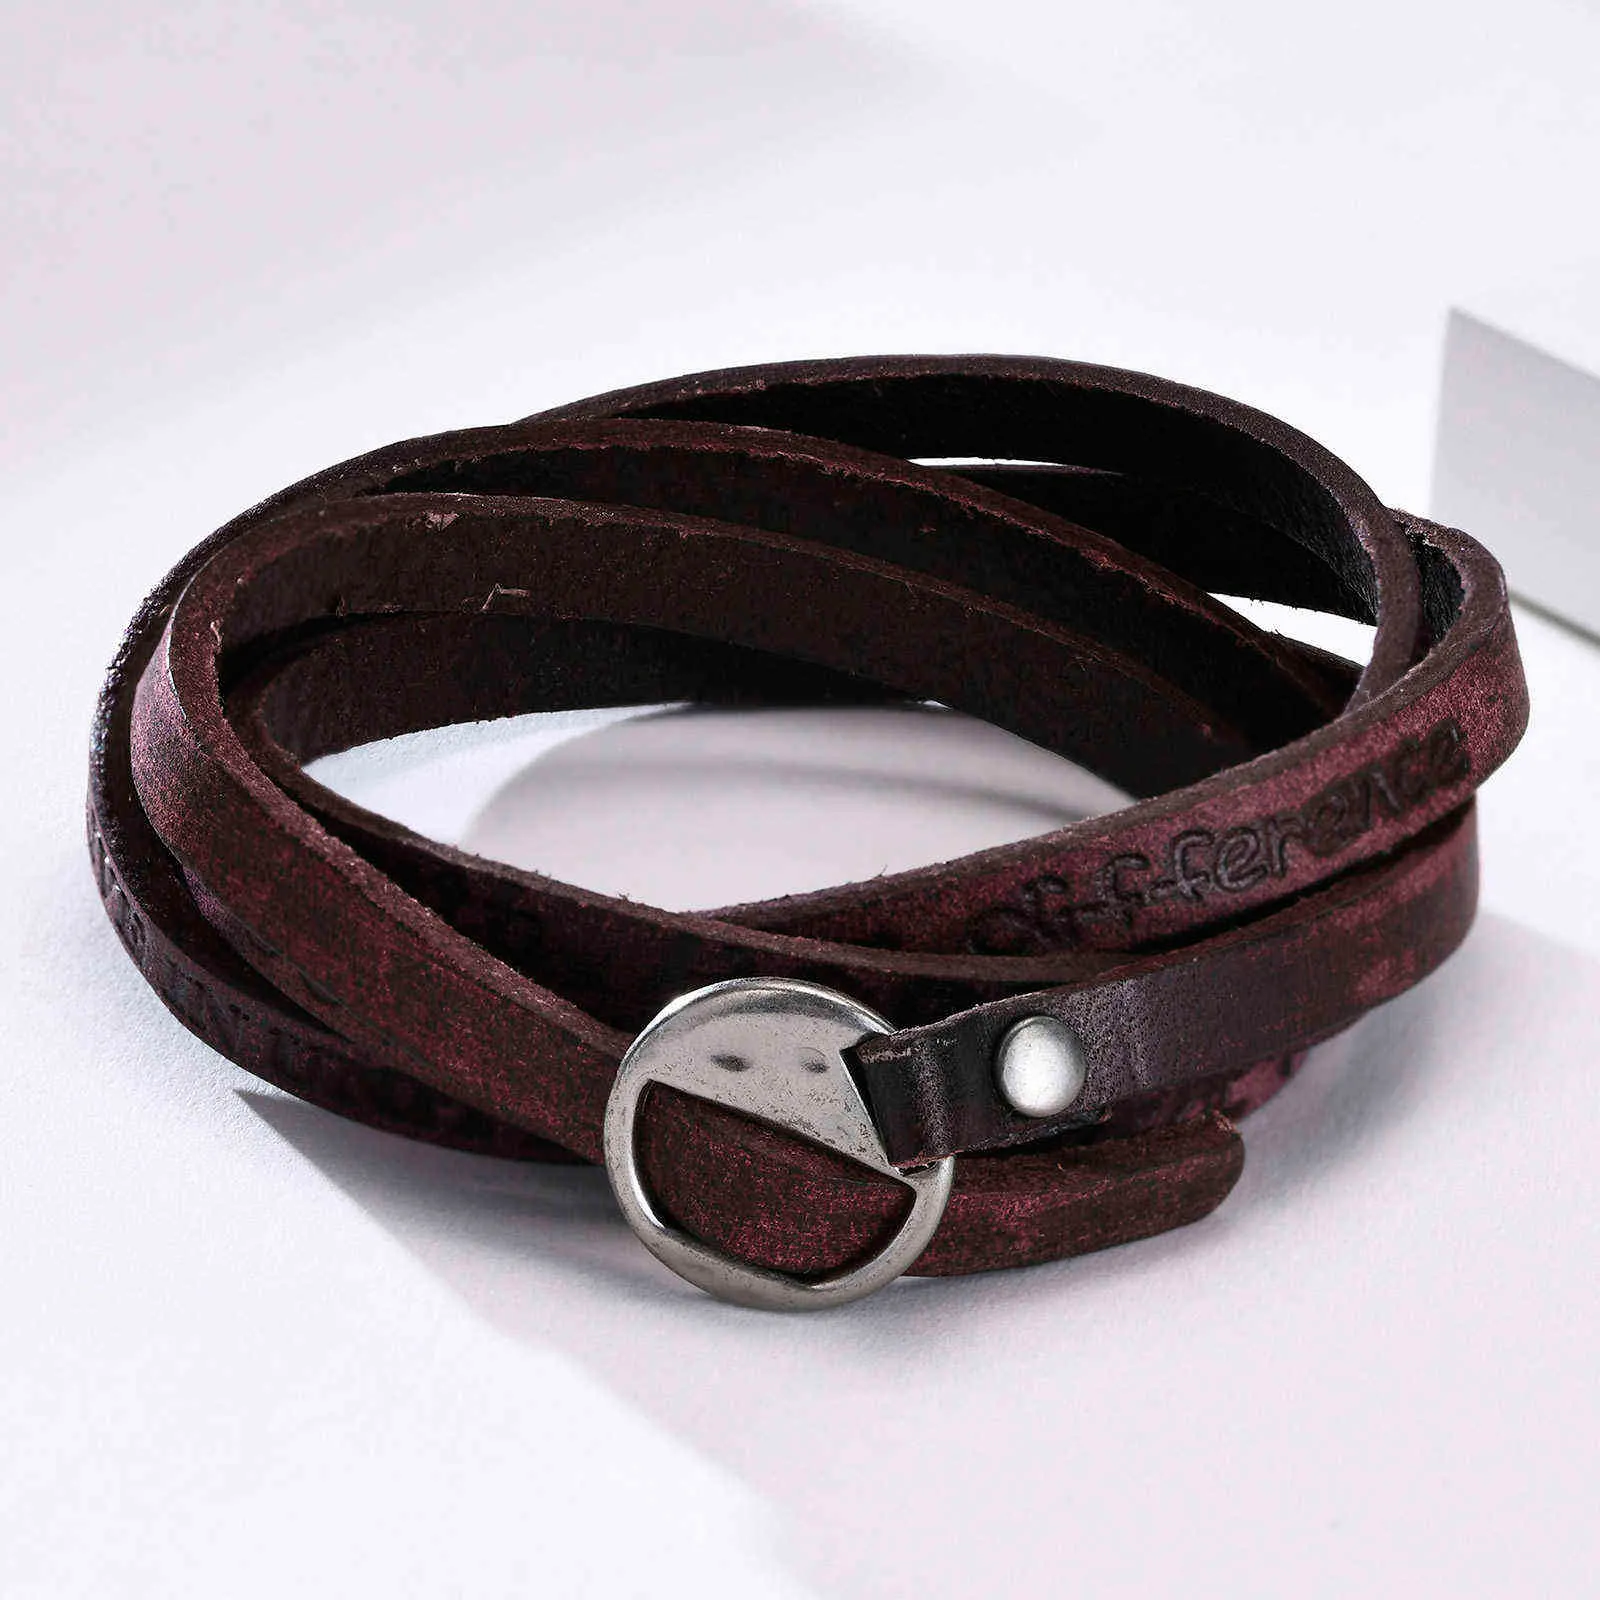 Bracelet en cuir pour homme simple et beau en marron foncé cadeau cadeau pour papa mari petit ami bijoux masculins